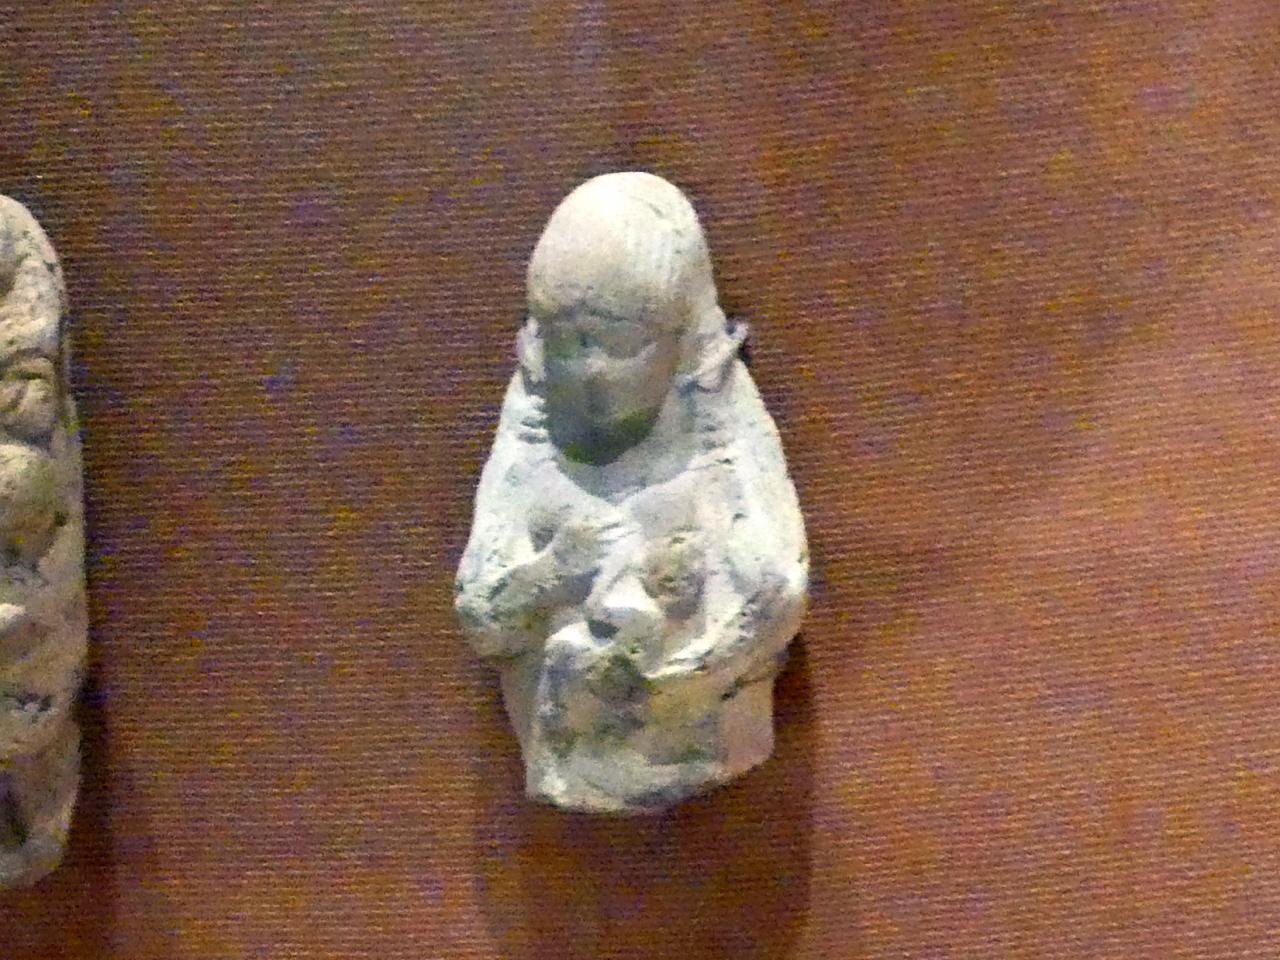 Frau mit Kind, Neubabylonische Zeit, 600 - 400 v. Chr., 600 - 500 v. Chr.